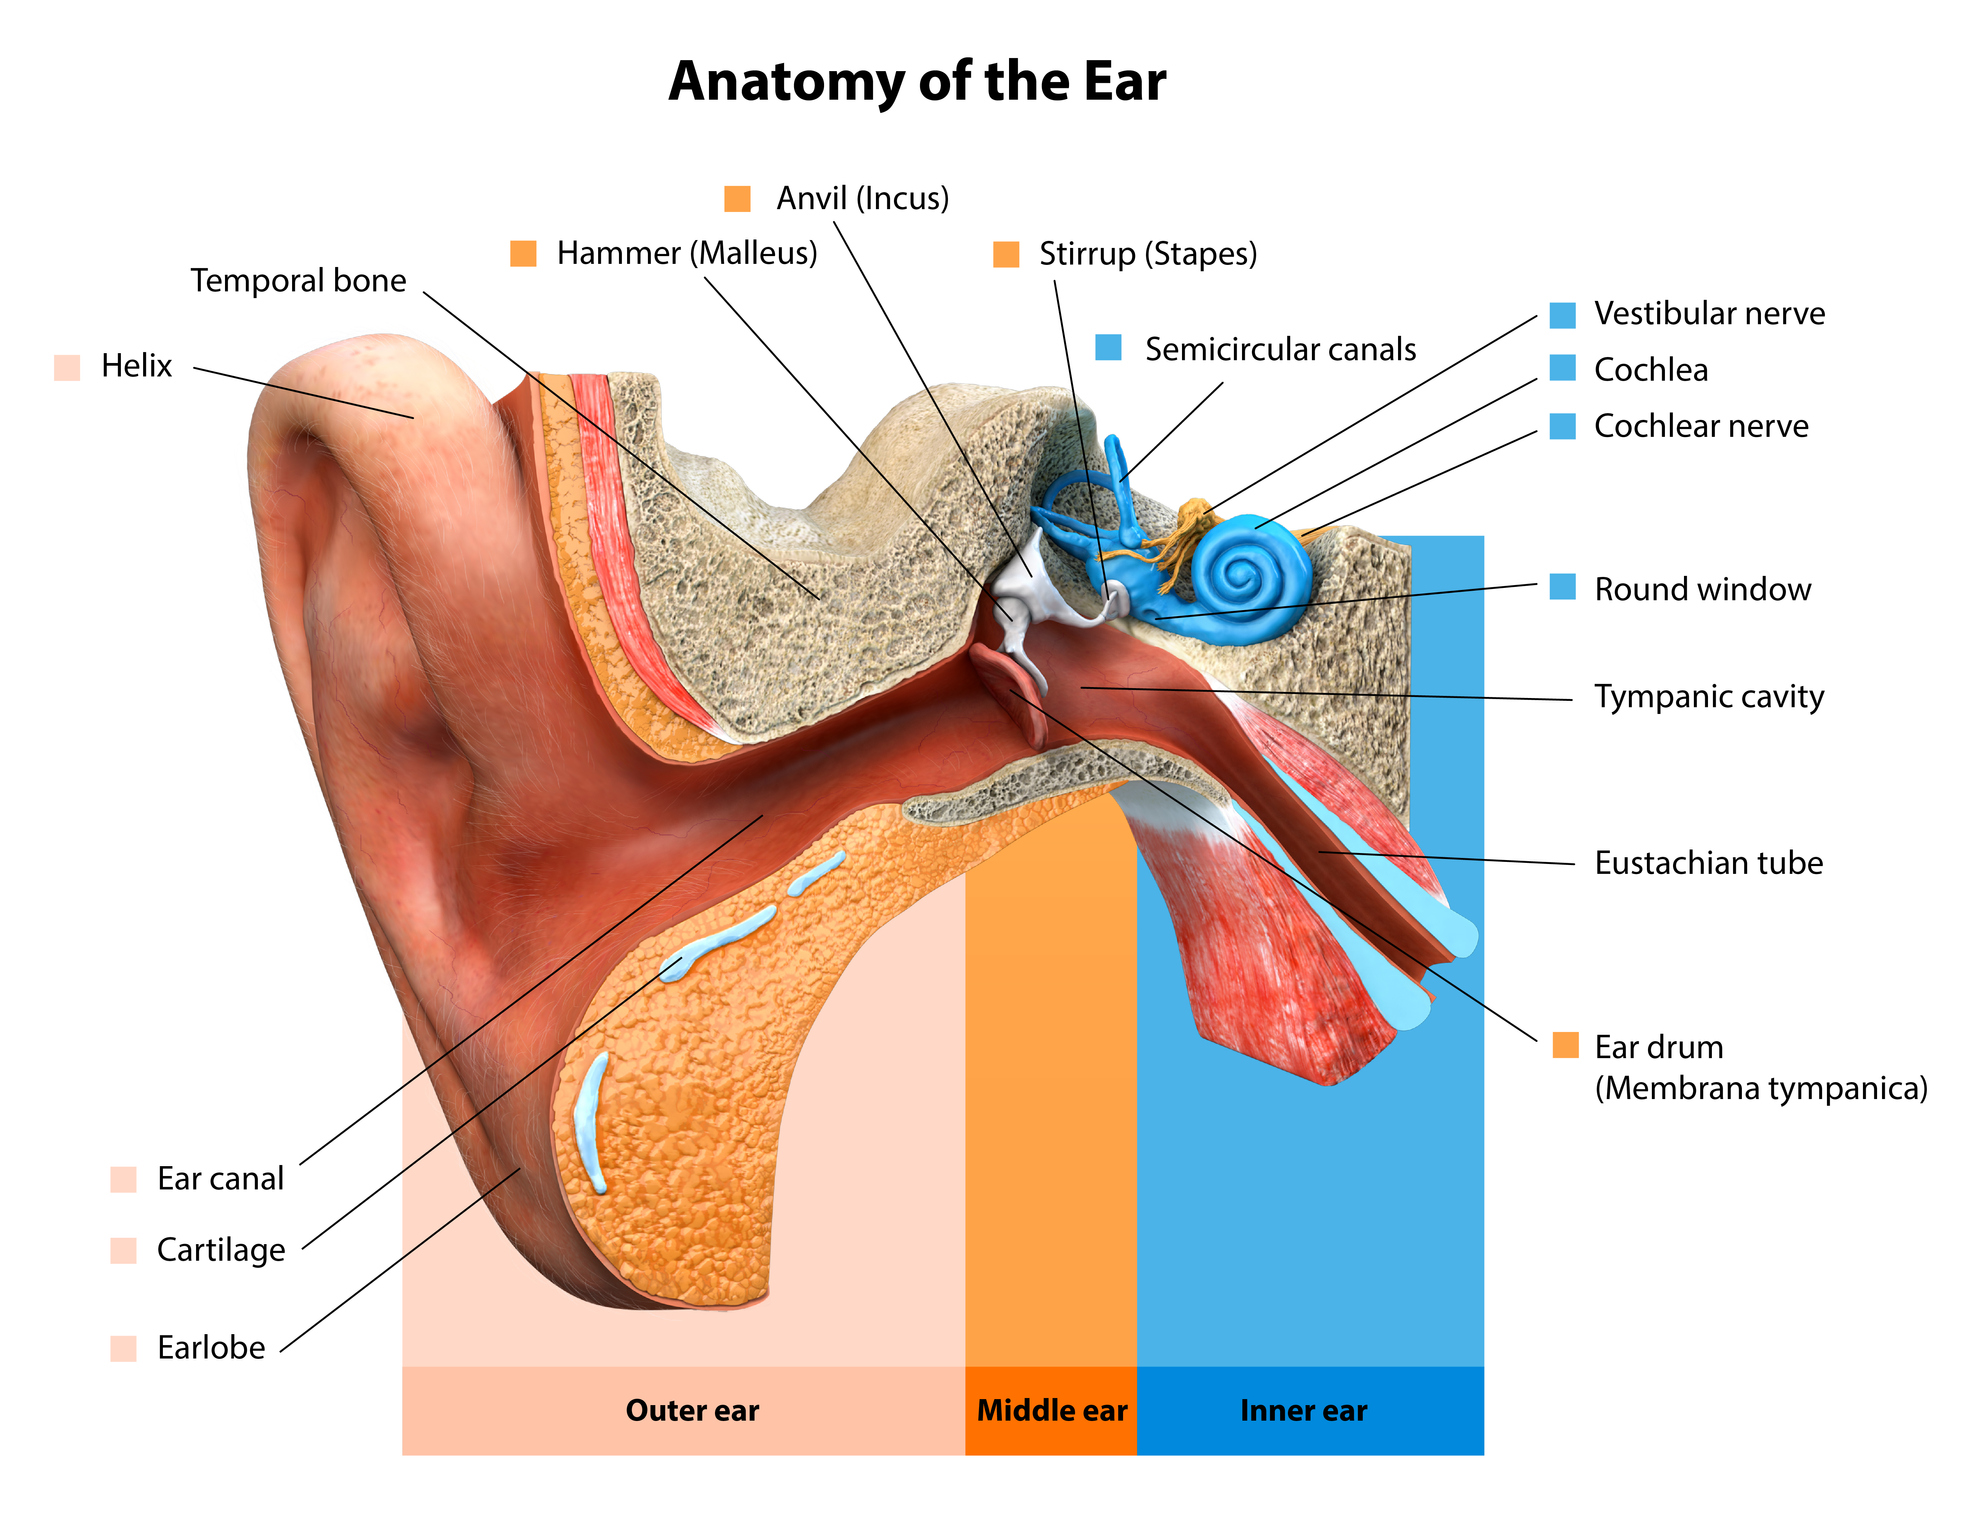 how long do ear diseases last